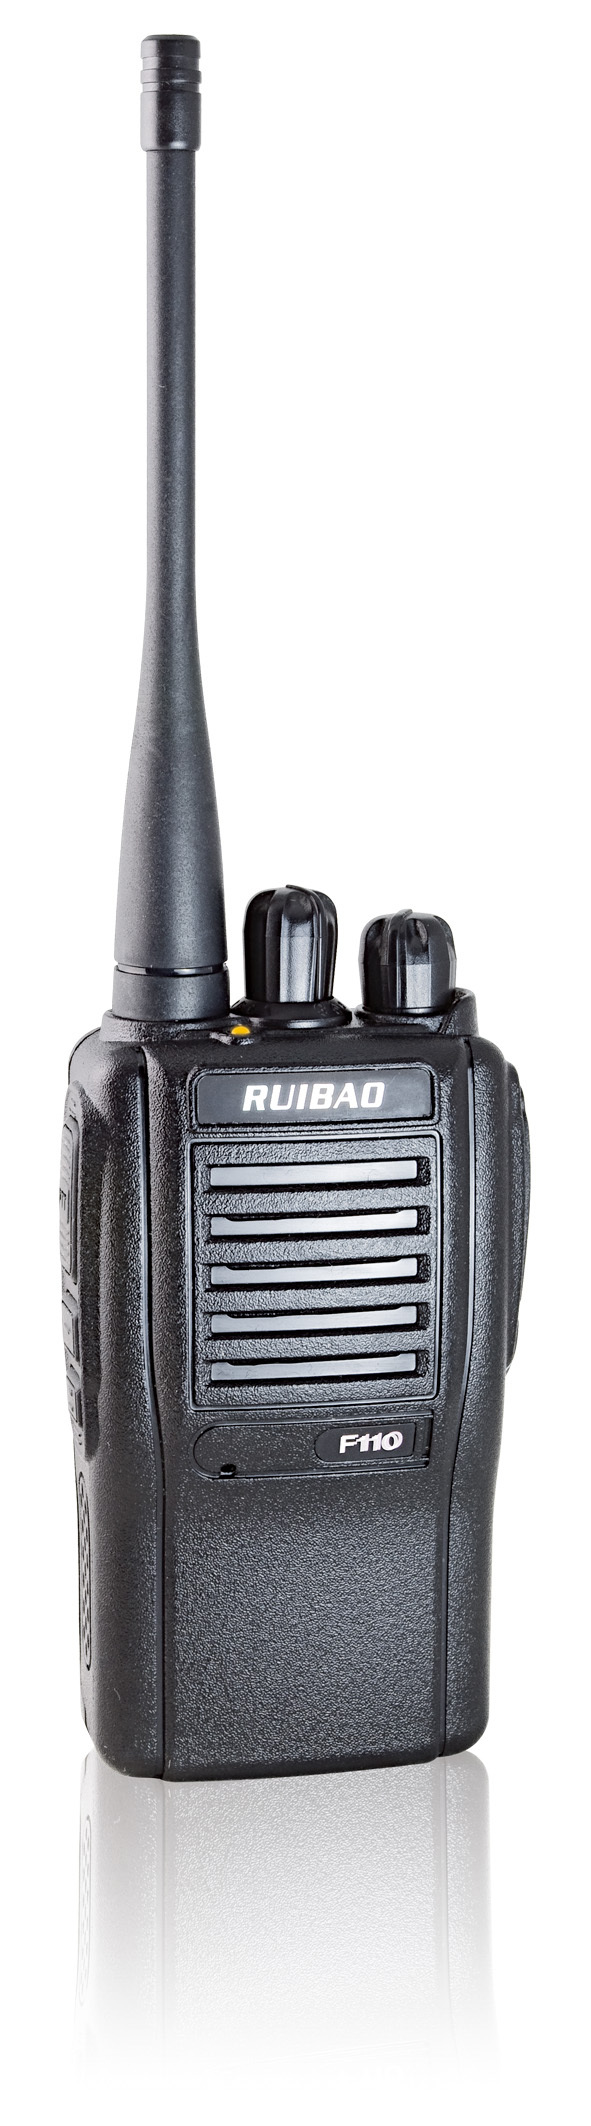 瑞宝RUIBAO - F110锂电池对讲机厂家直销全新 正品 民用对讲机